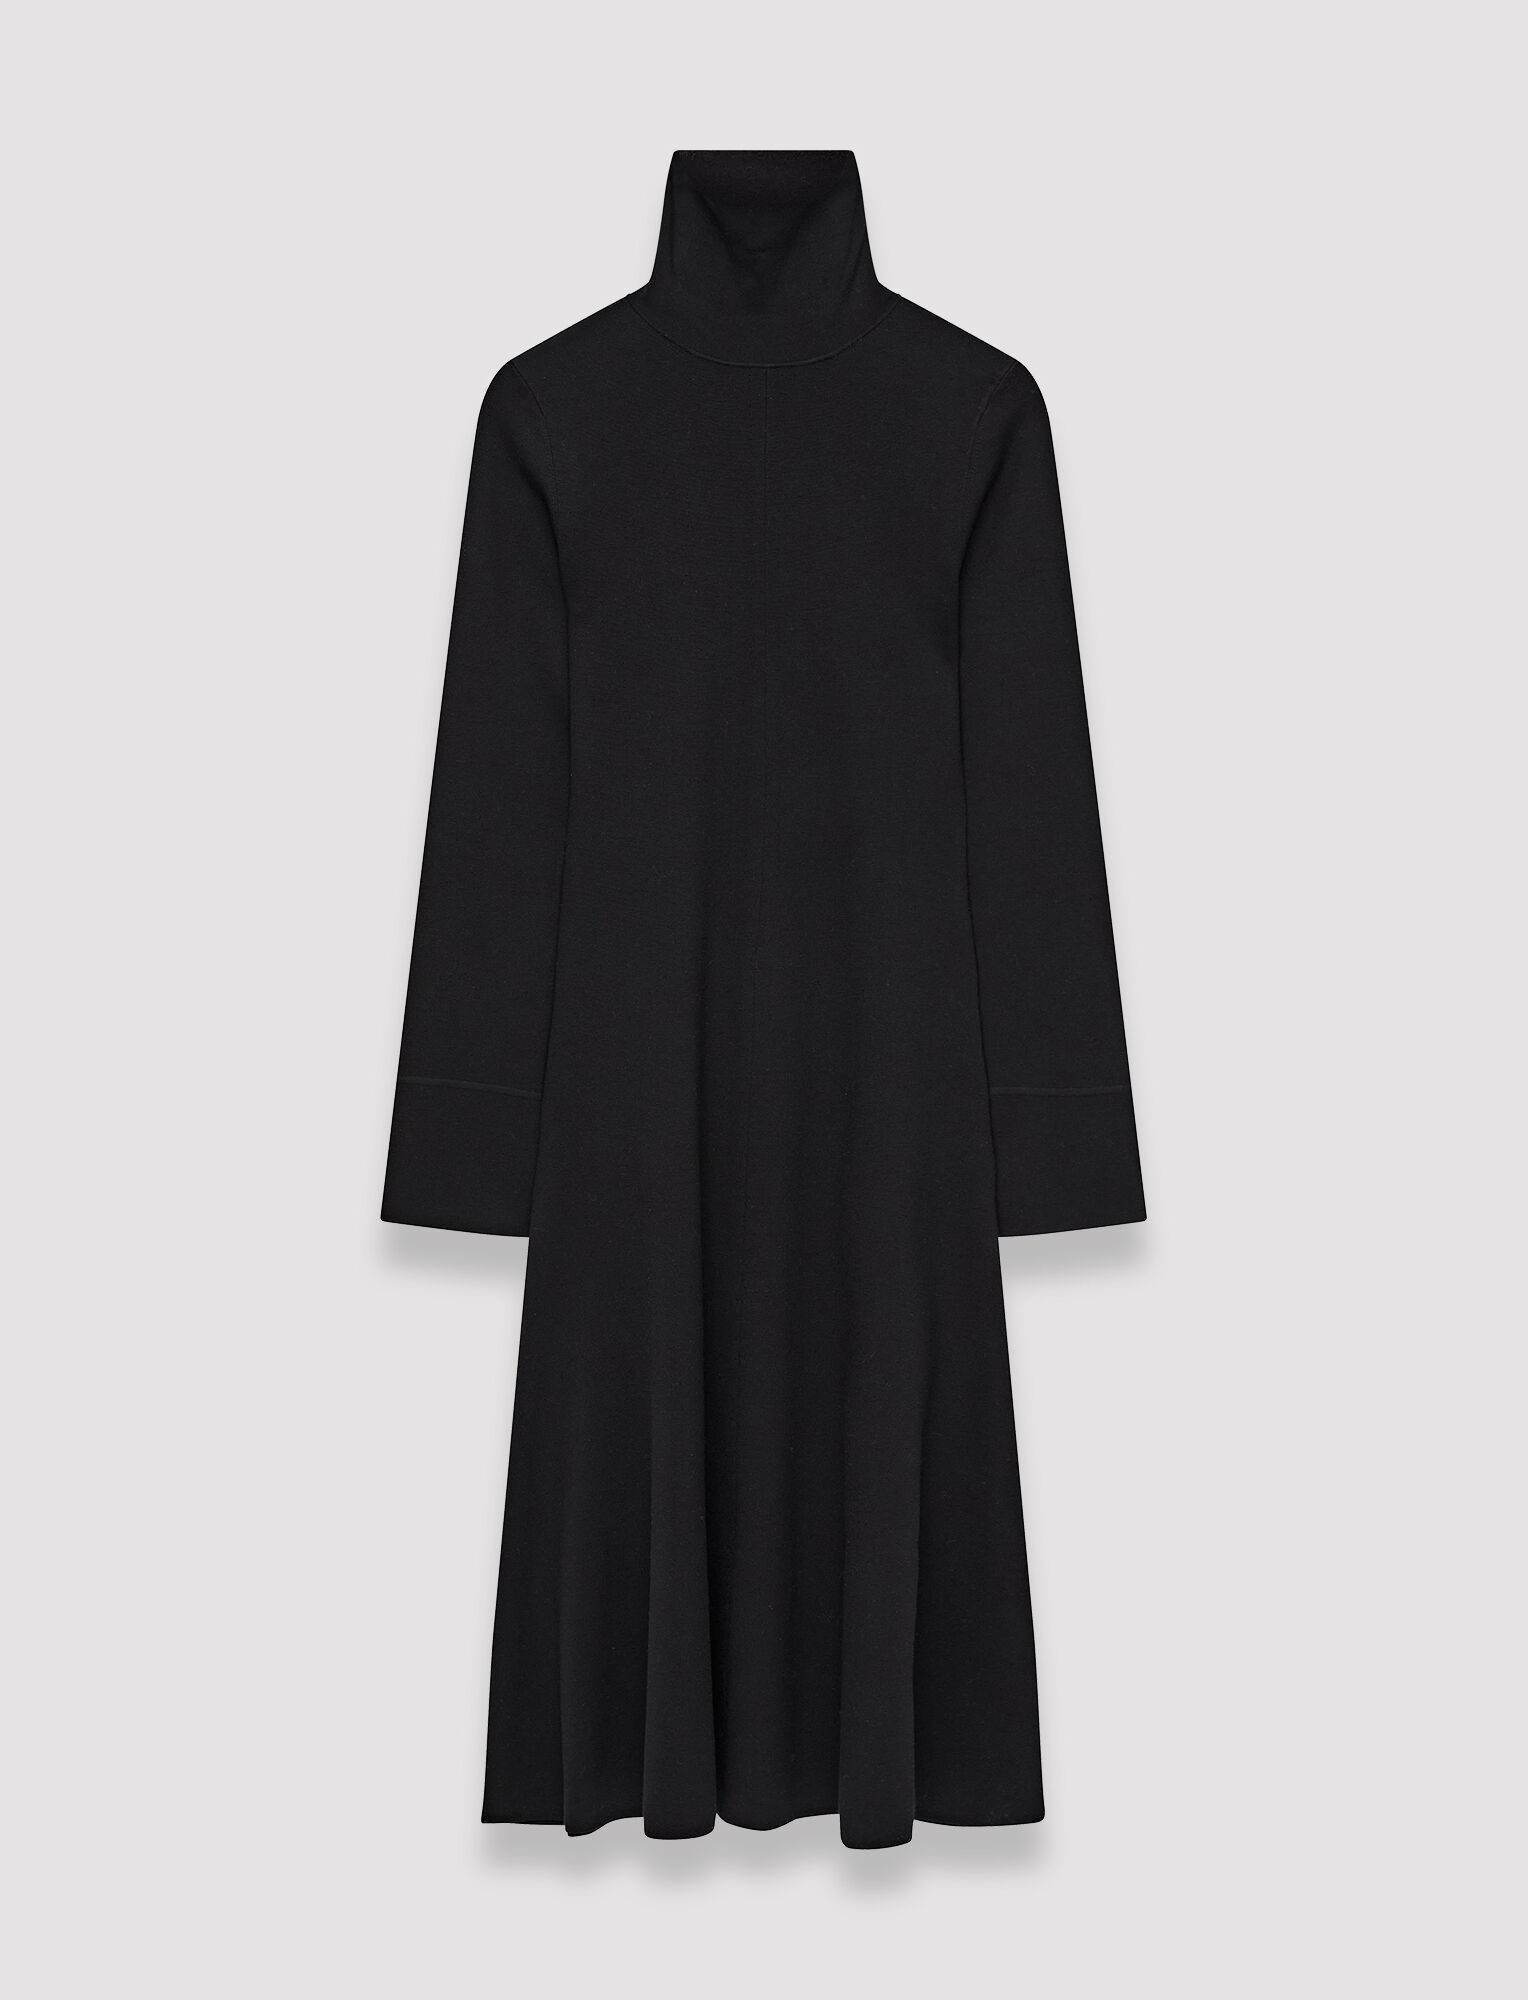 Silk Stretch Dress in Black | JOSEPH UK